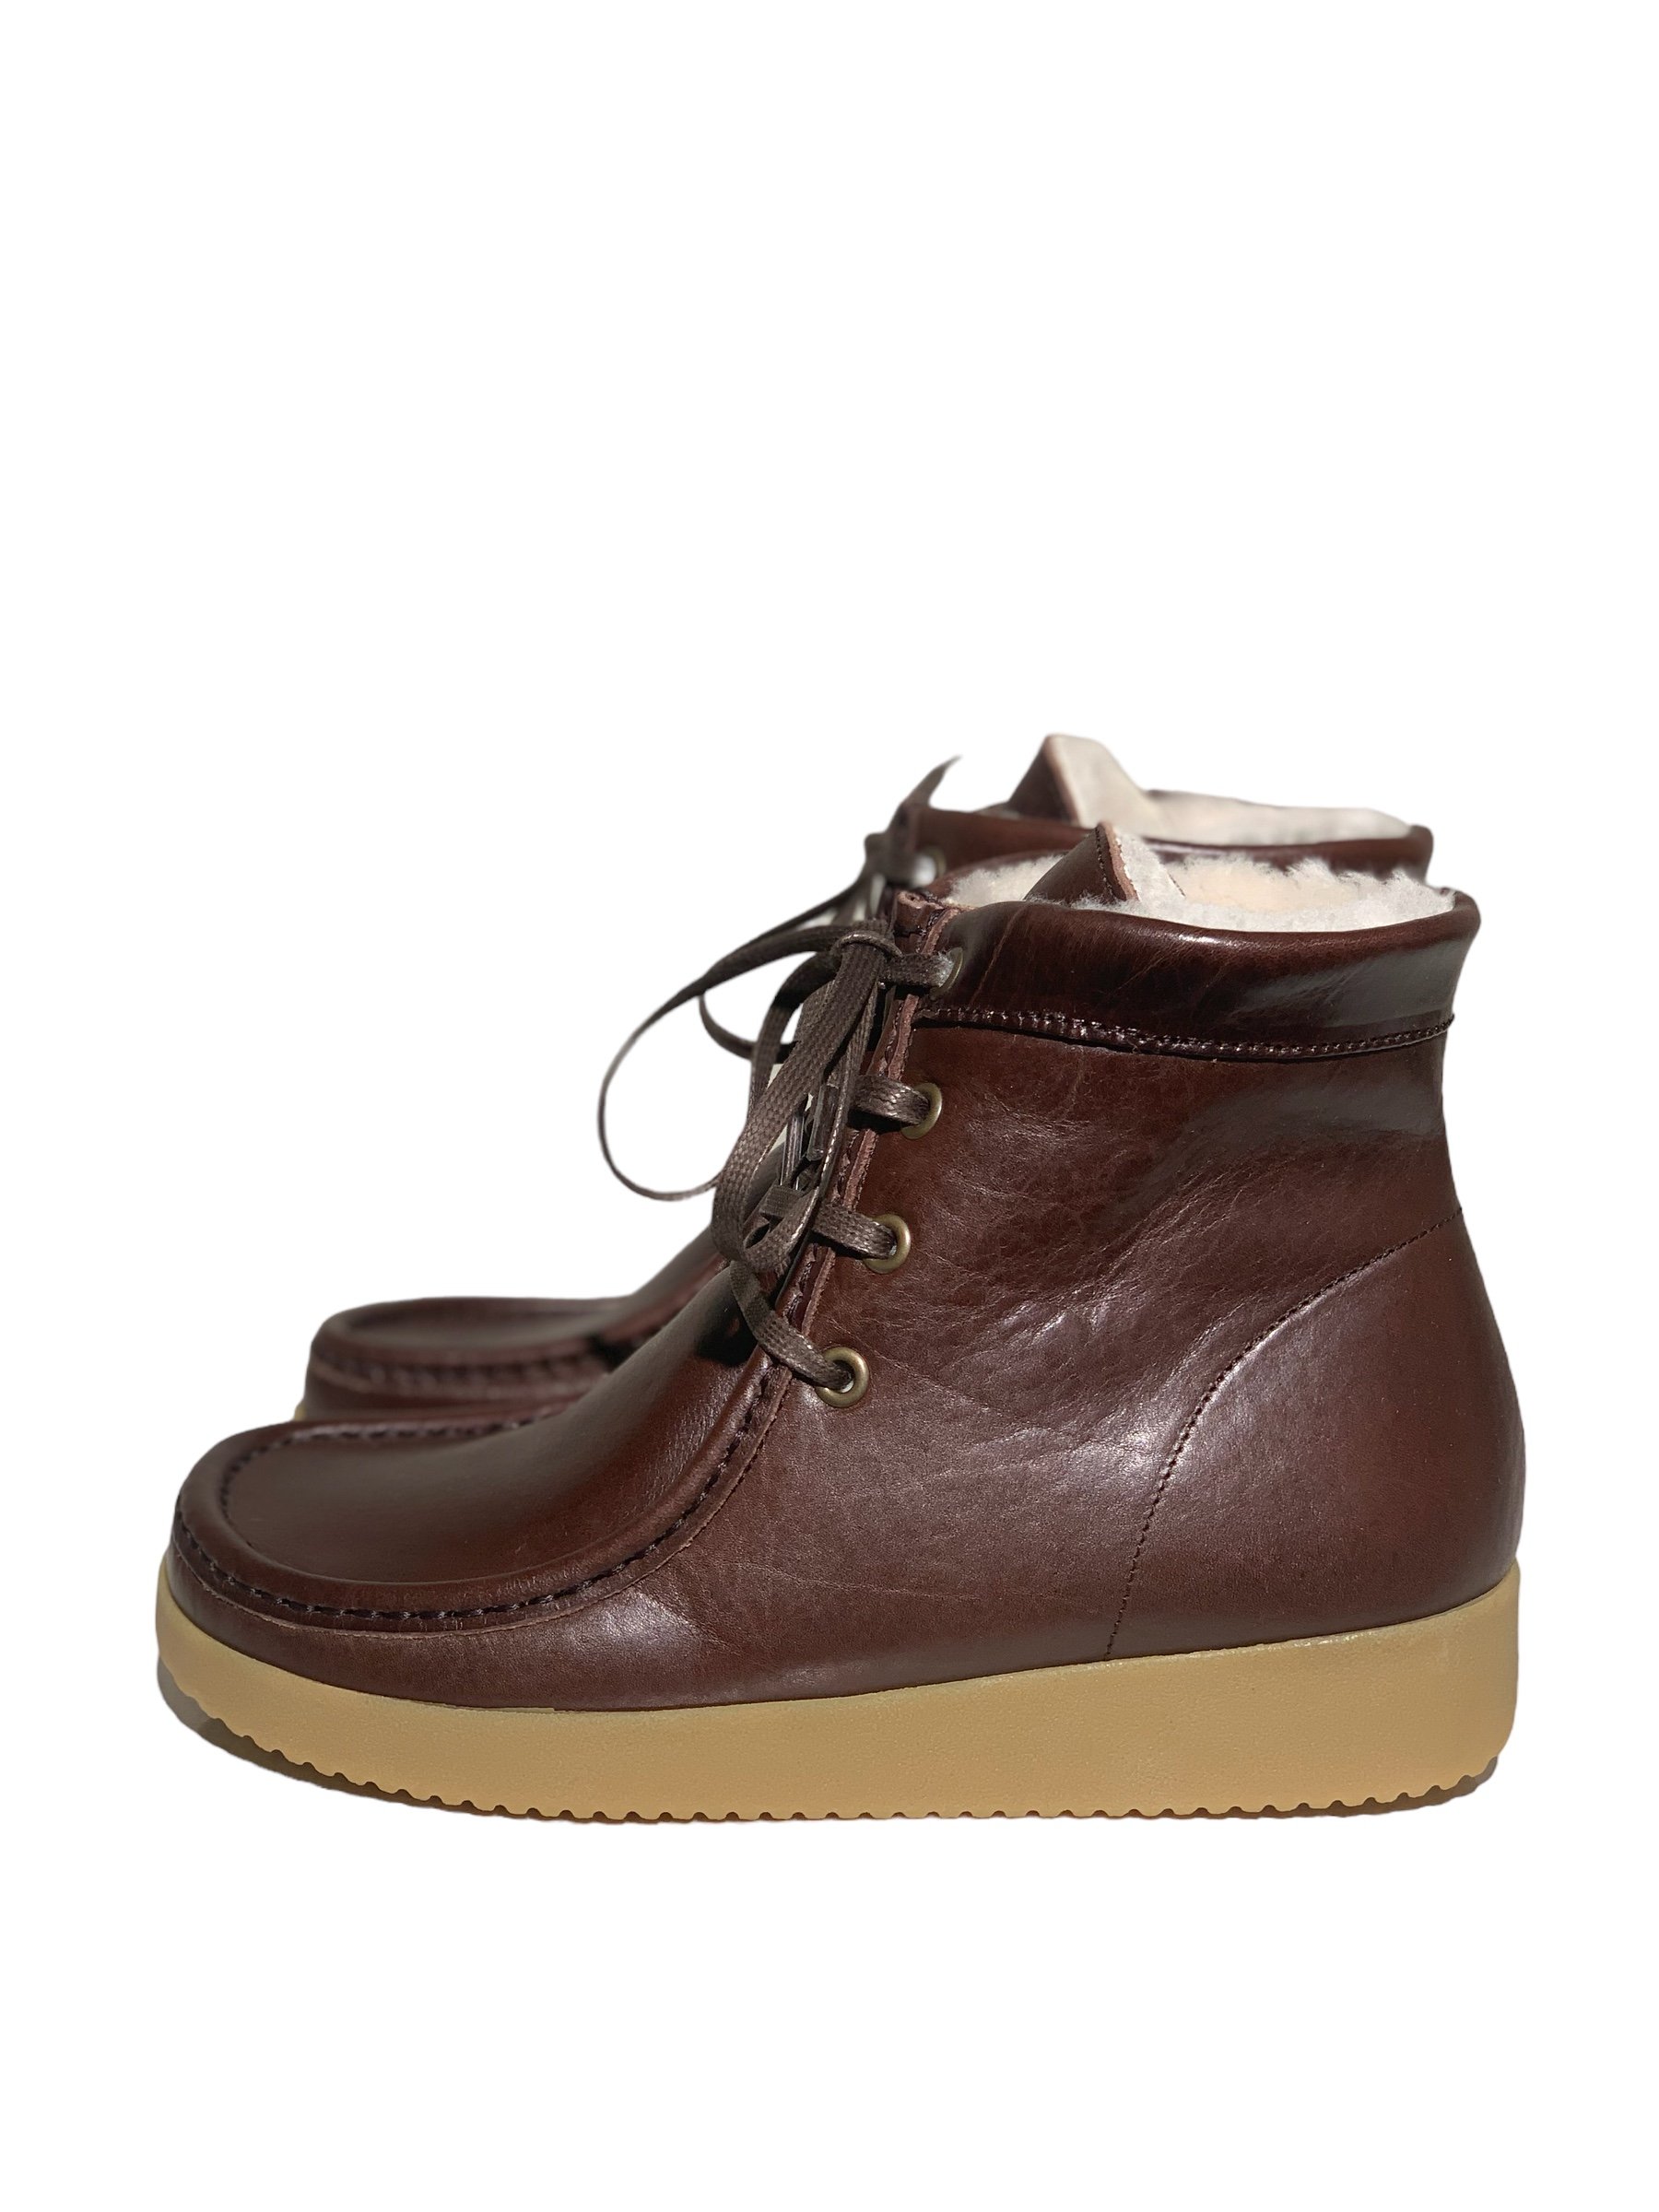 At vise Sway Overskrift Nature støvle, Asta, med foer, skind, coffee (brun) - Nature - Fiona sko